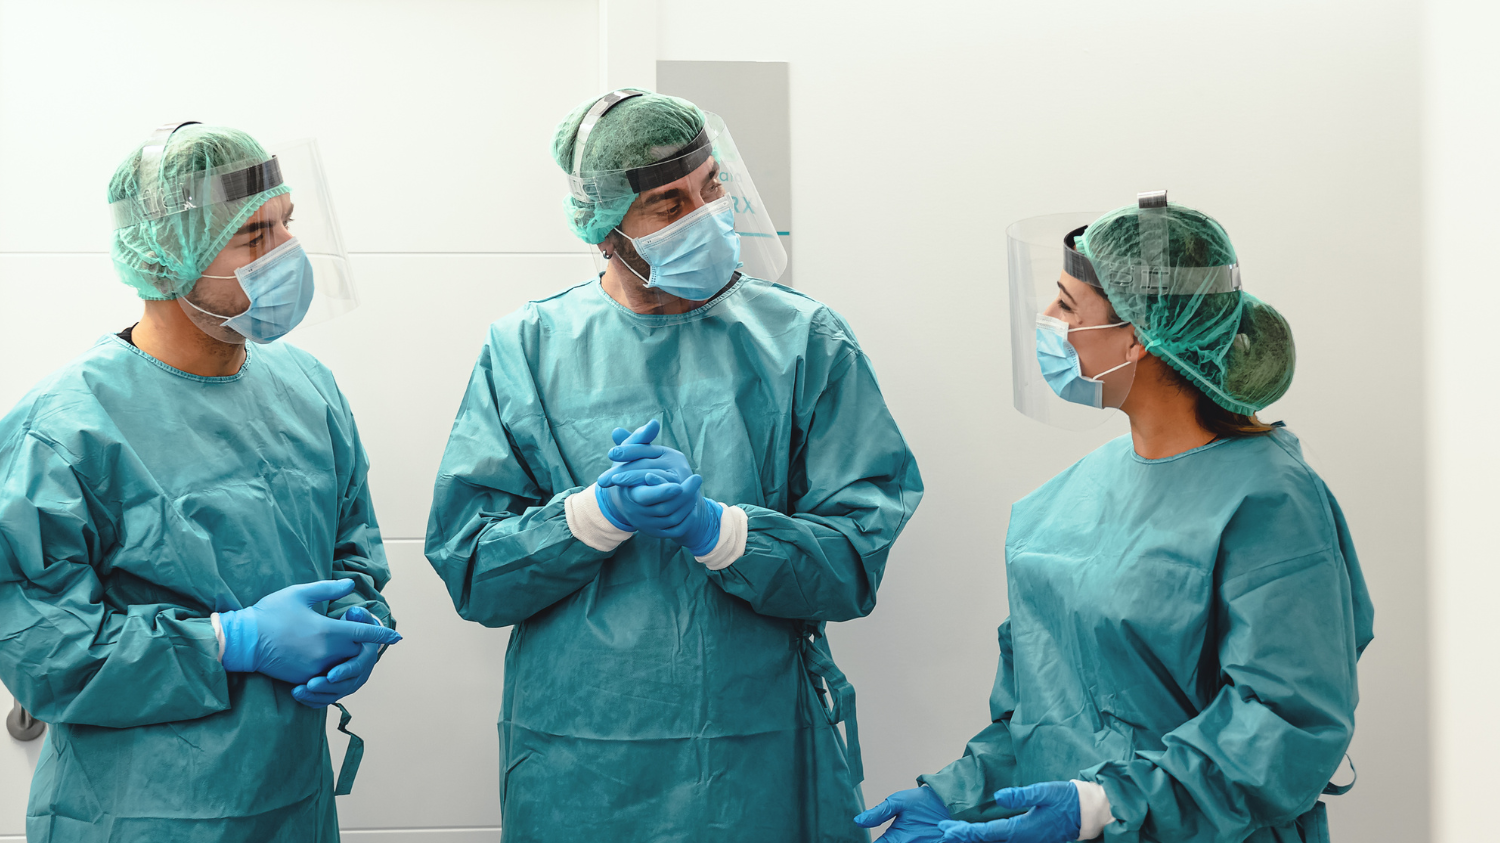 Nurses in PPE discuss a patient